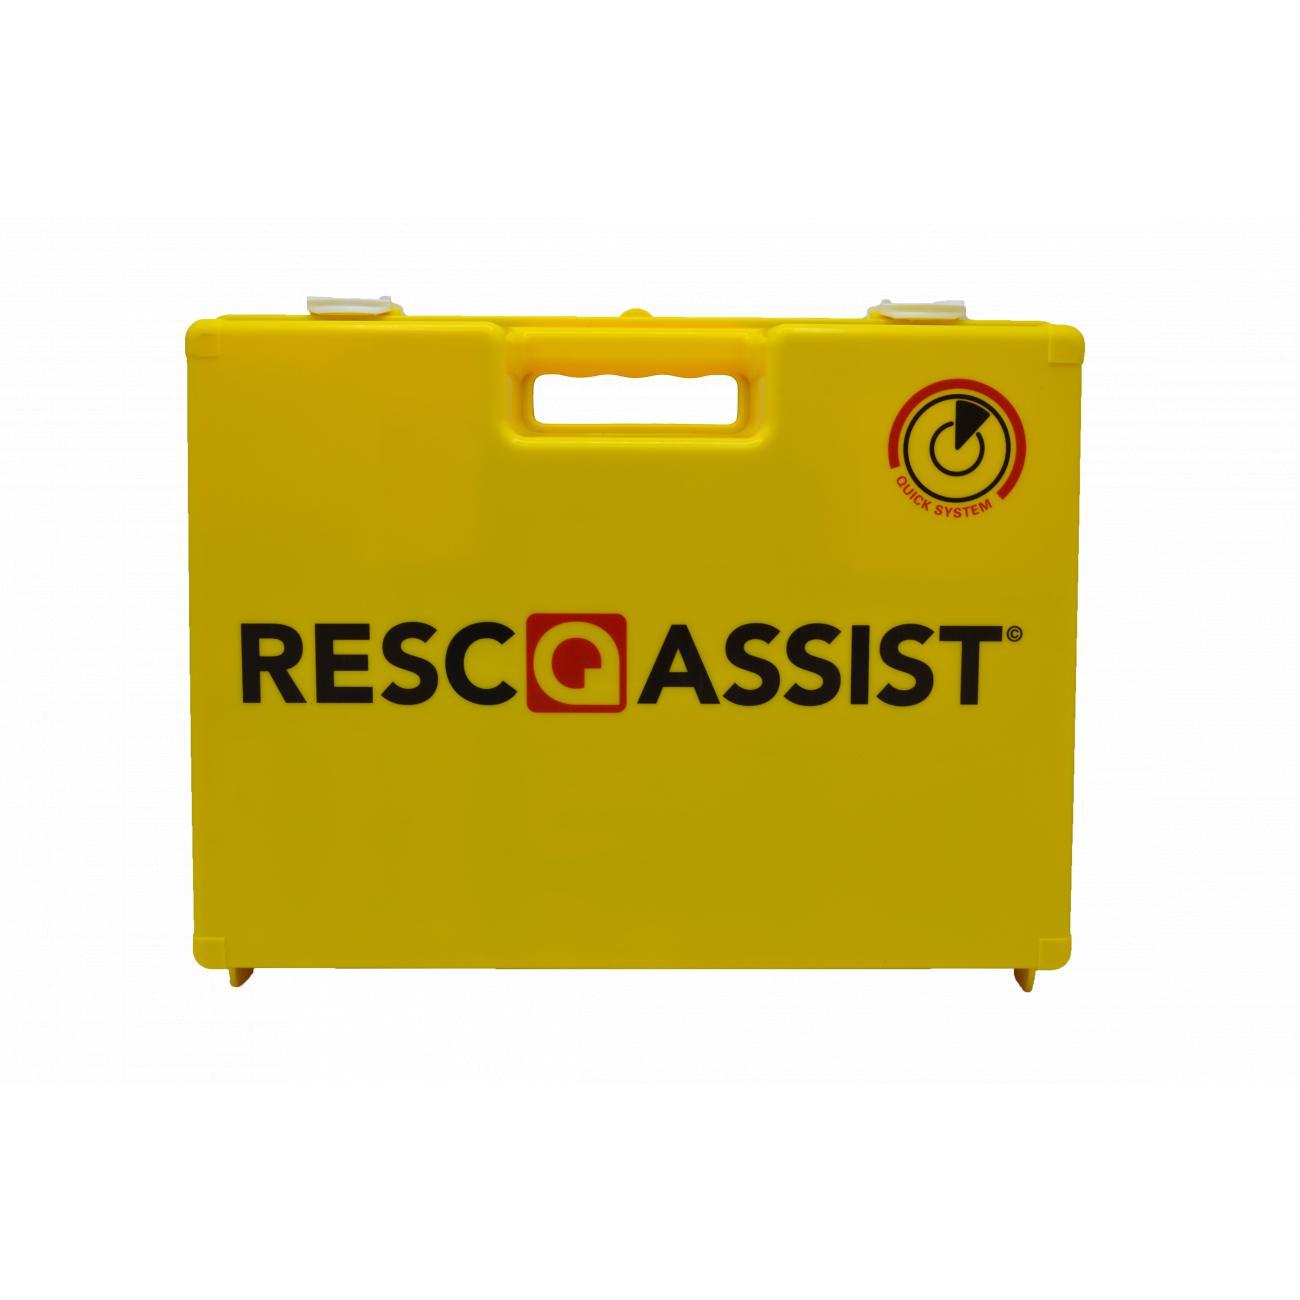 Resc-Q-Assist DIN13157:2021